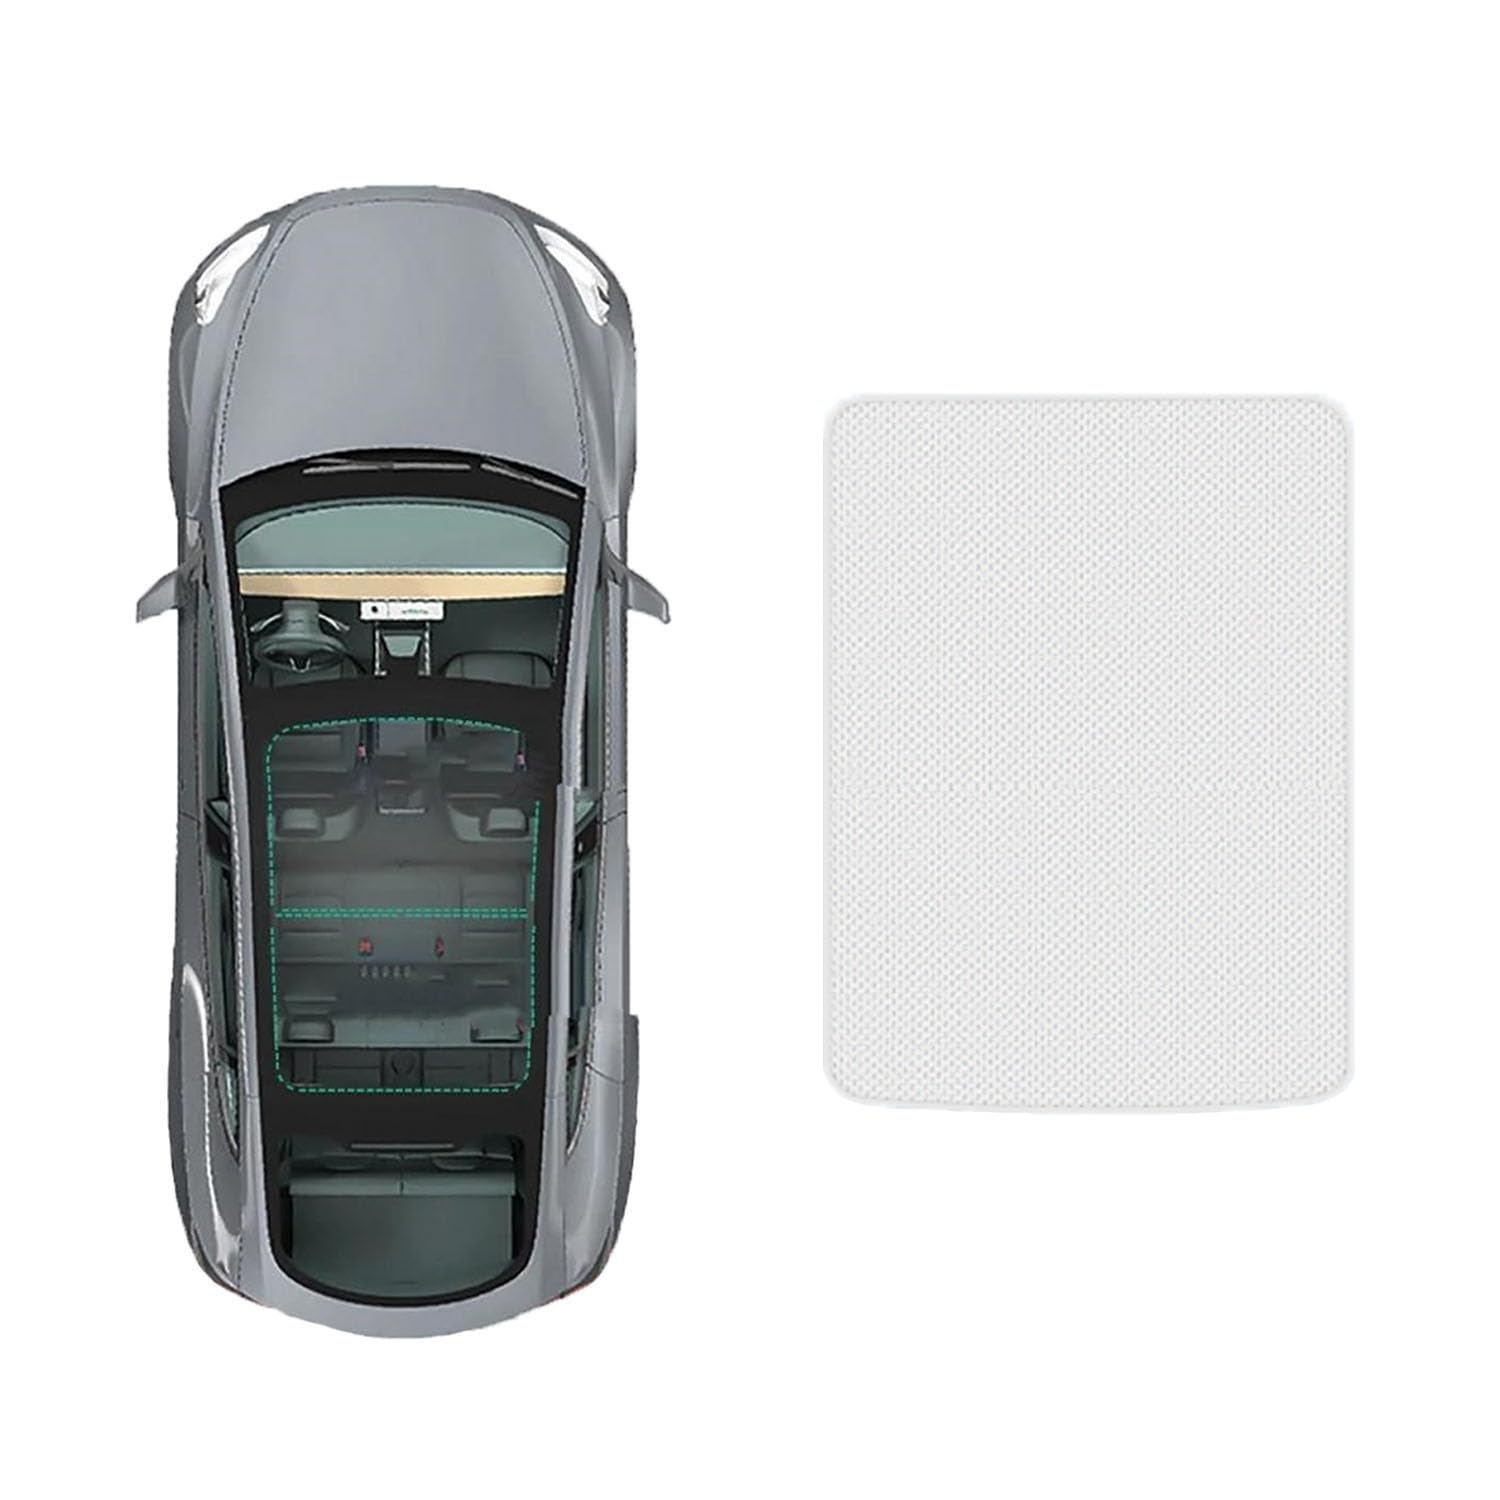 Visier Sonnenschutzabdeckung Für Audi A5 2019-,AAnti-UV Sonnenschutz Abdeckung Schiebedach Sonnenschutz Innen Auto Zubehör,A-Gray white regular Style von HhyY6LL